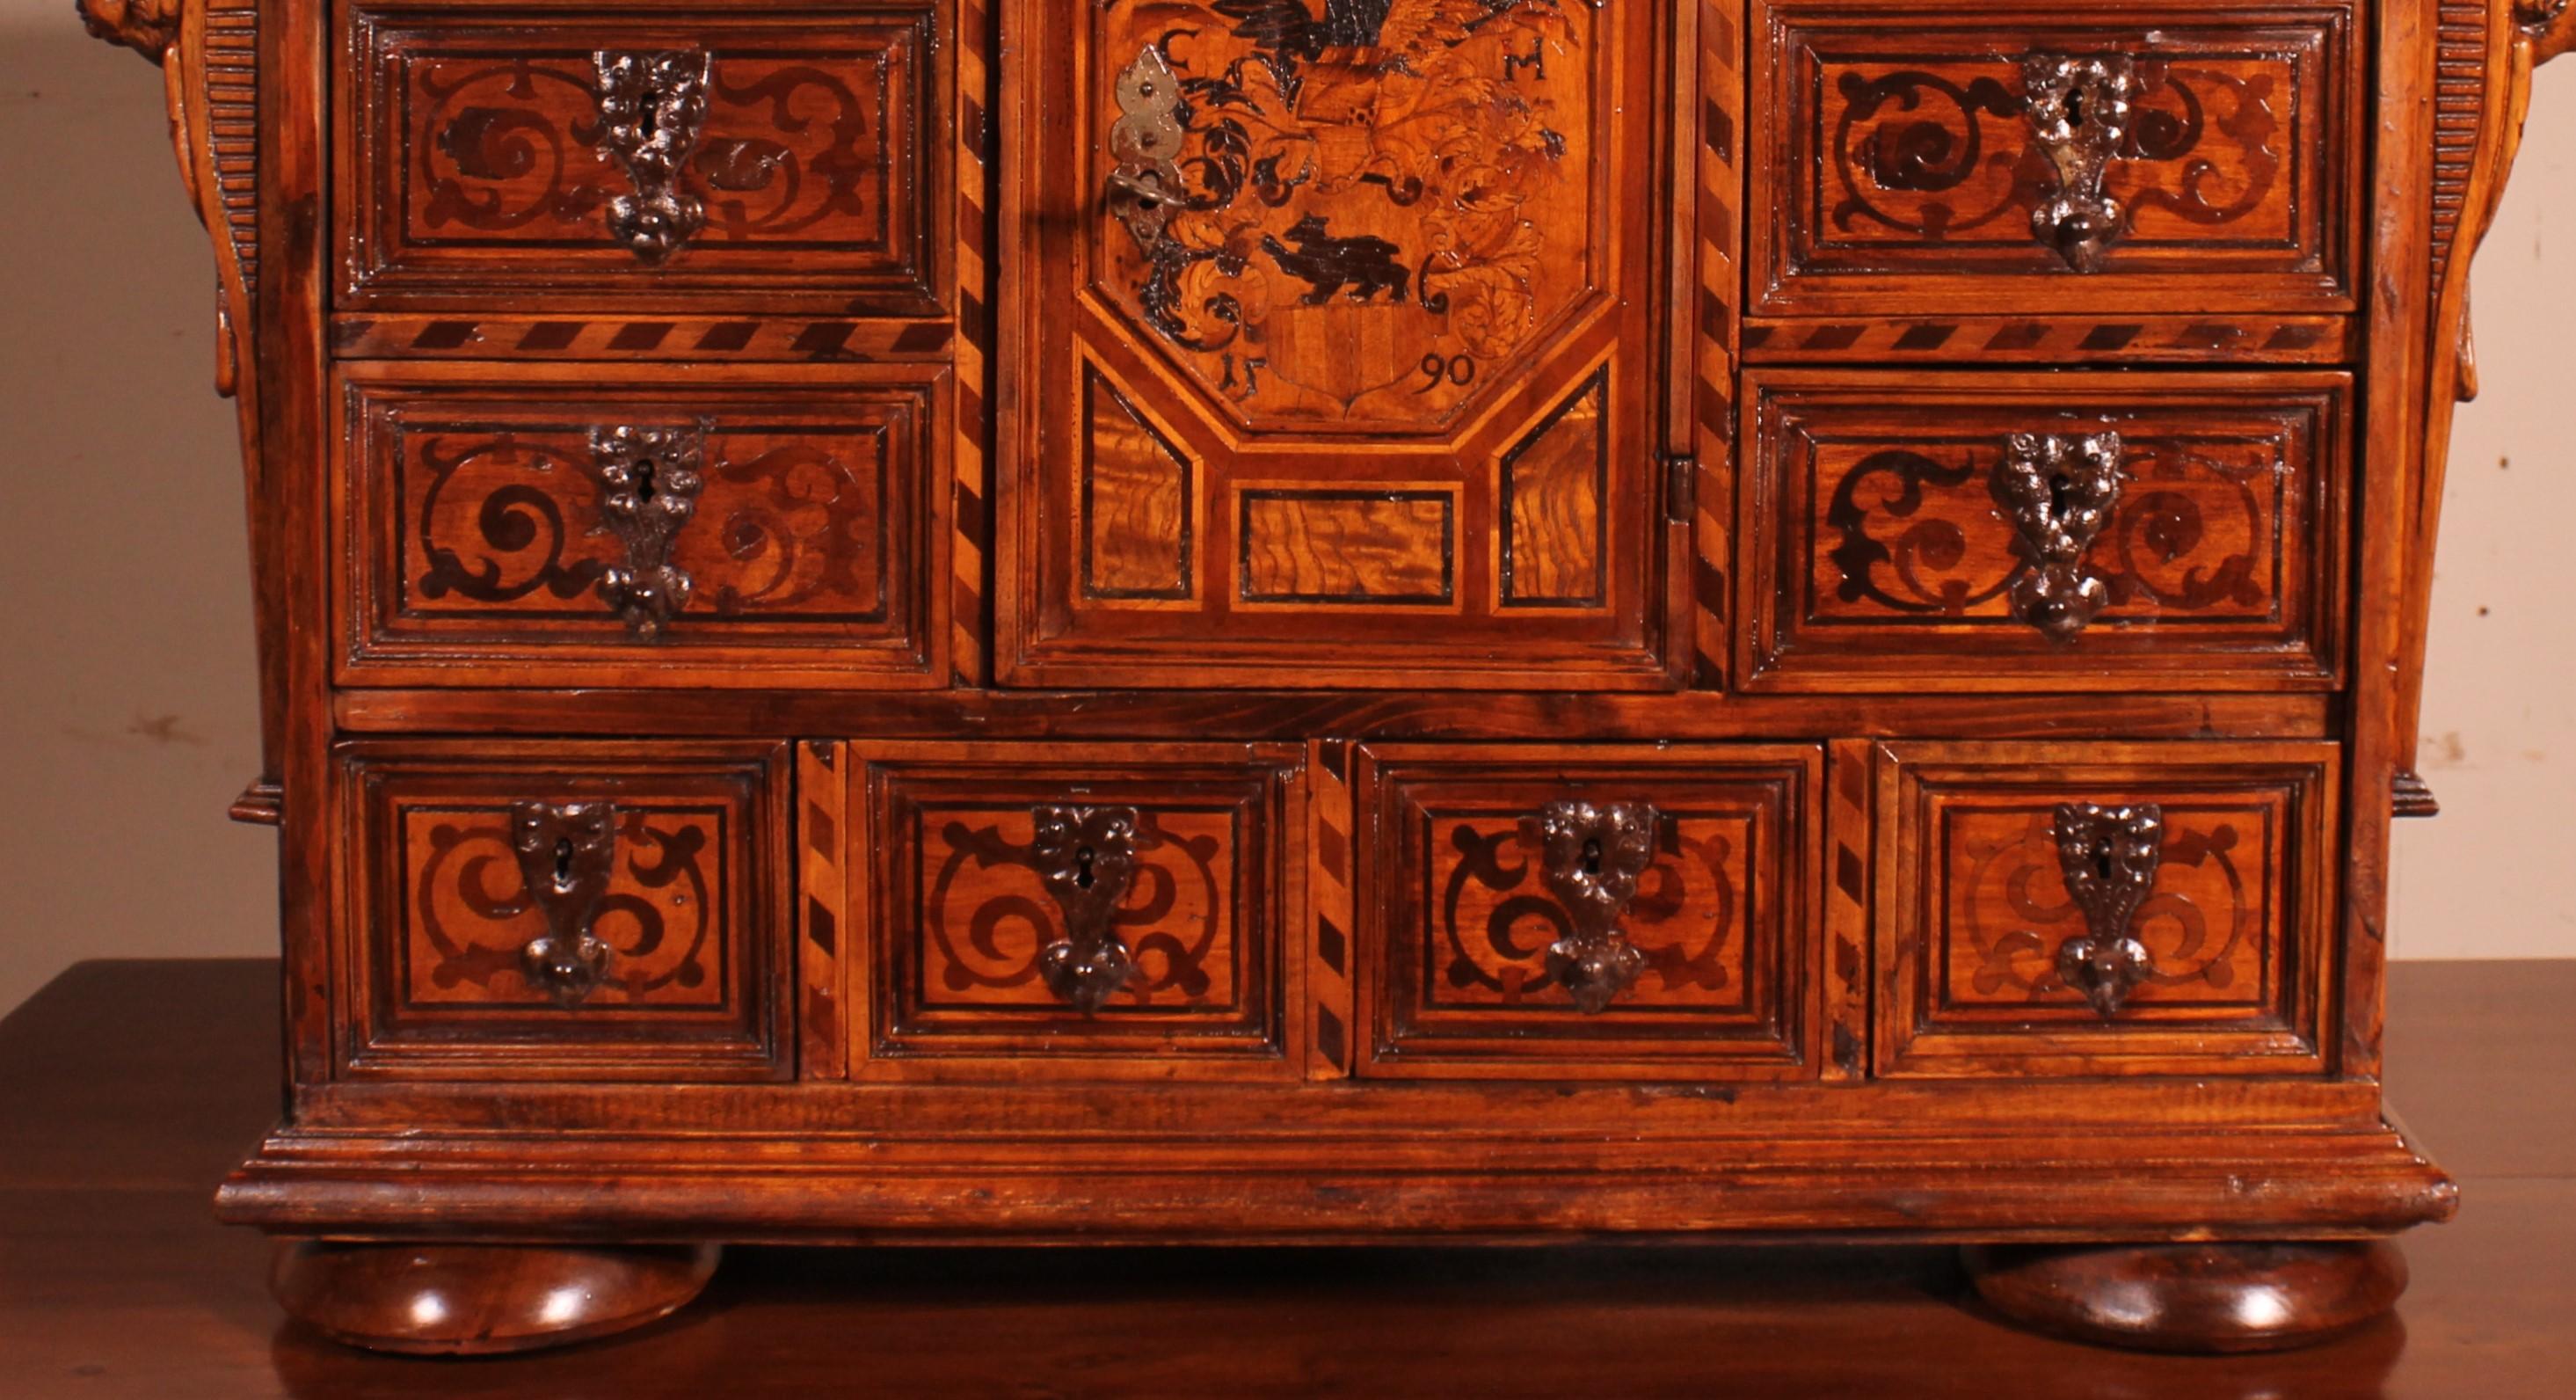 Sehr schöner deutscher Schrank wahrscheinlich Schwarzwald datiert 1590 in Nussbaum.

Sowohl die Schubladen als auch die Tür sind mit prächtigen gemeißelten Schlössern versehen. Das ist ein monumentales Werk und ein Zeichen für die schöne Herkunft